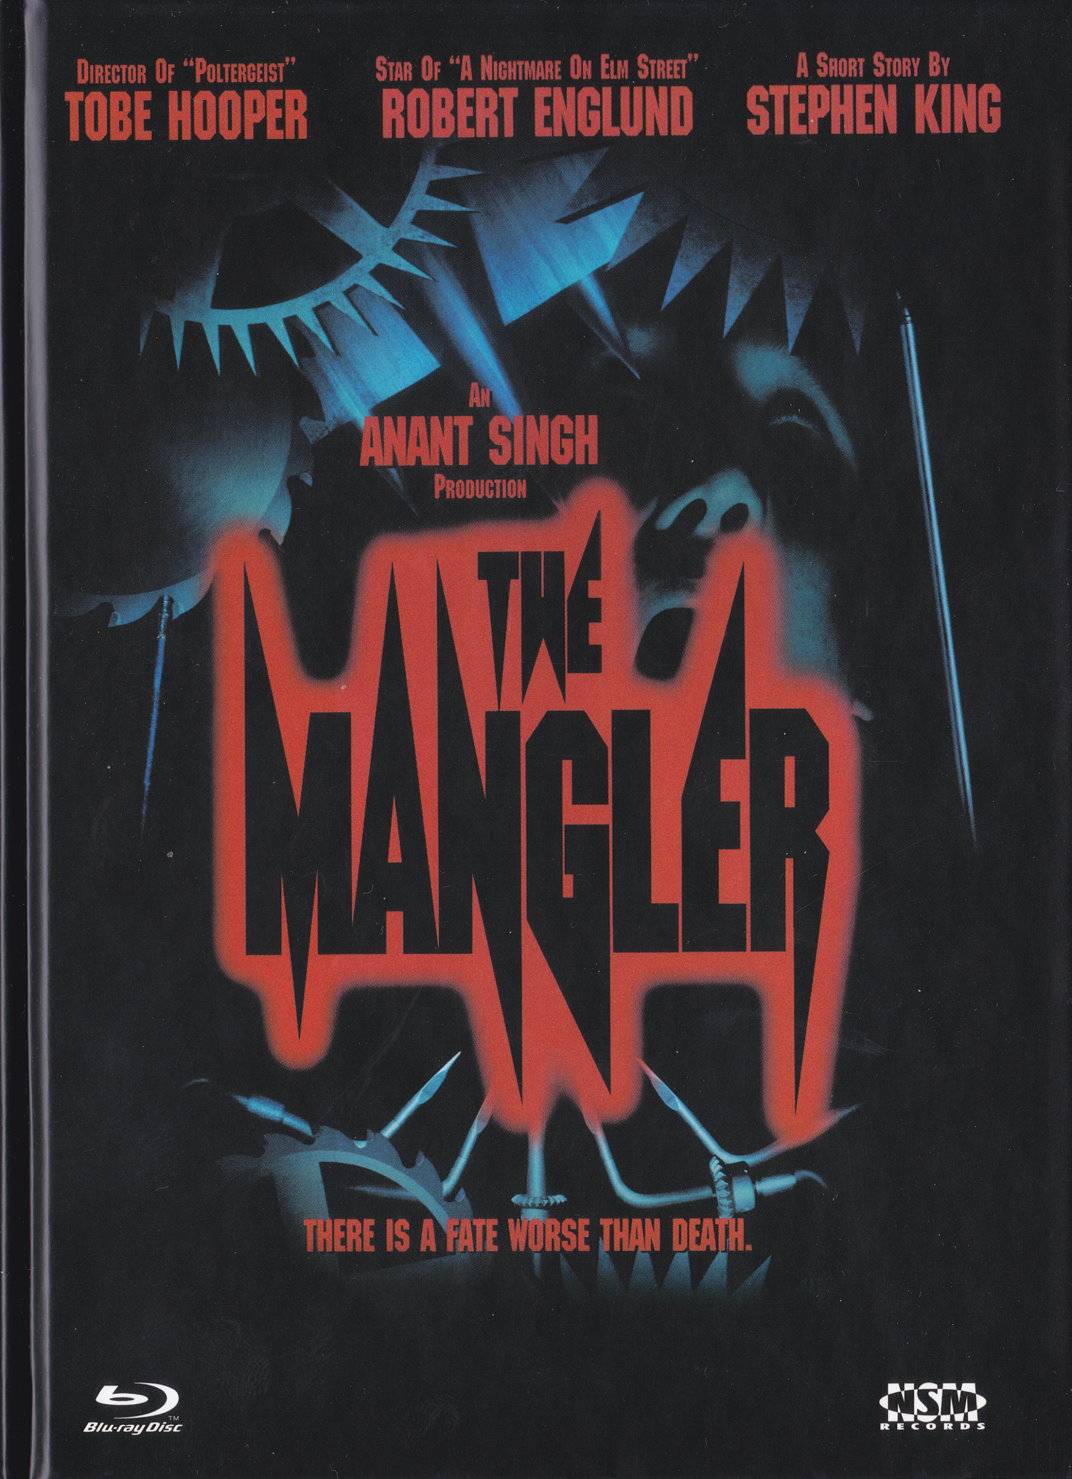 Cover - The Mangler.jpg